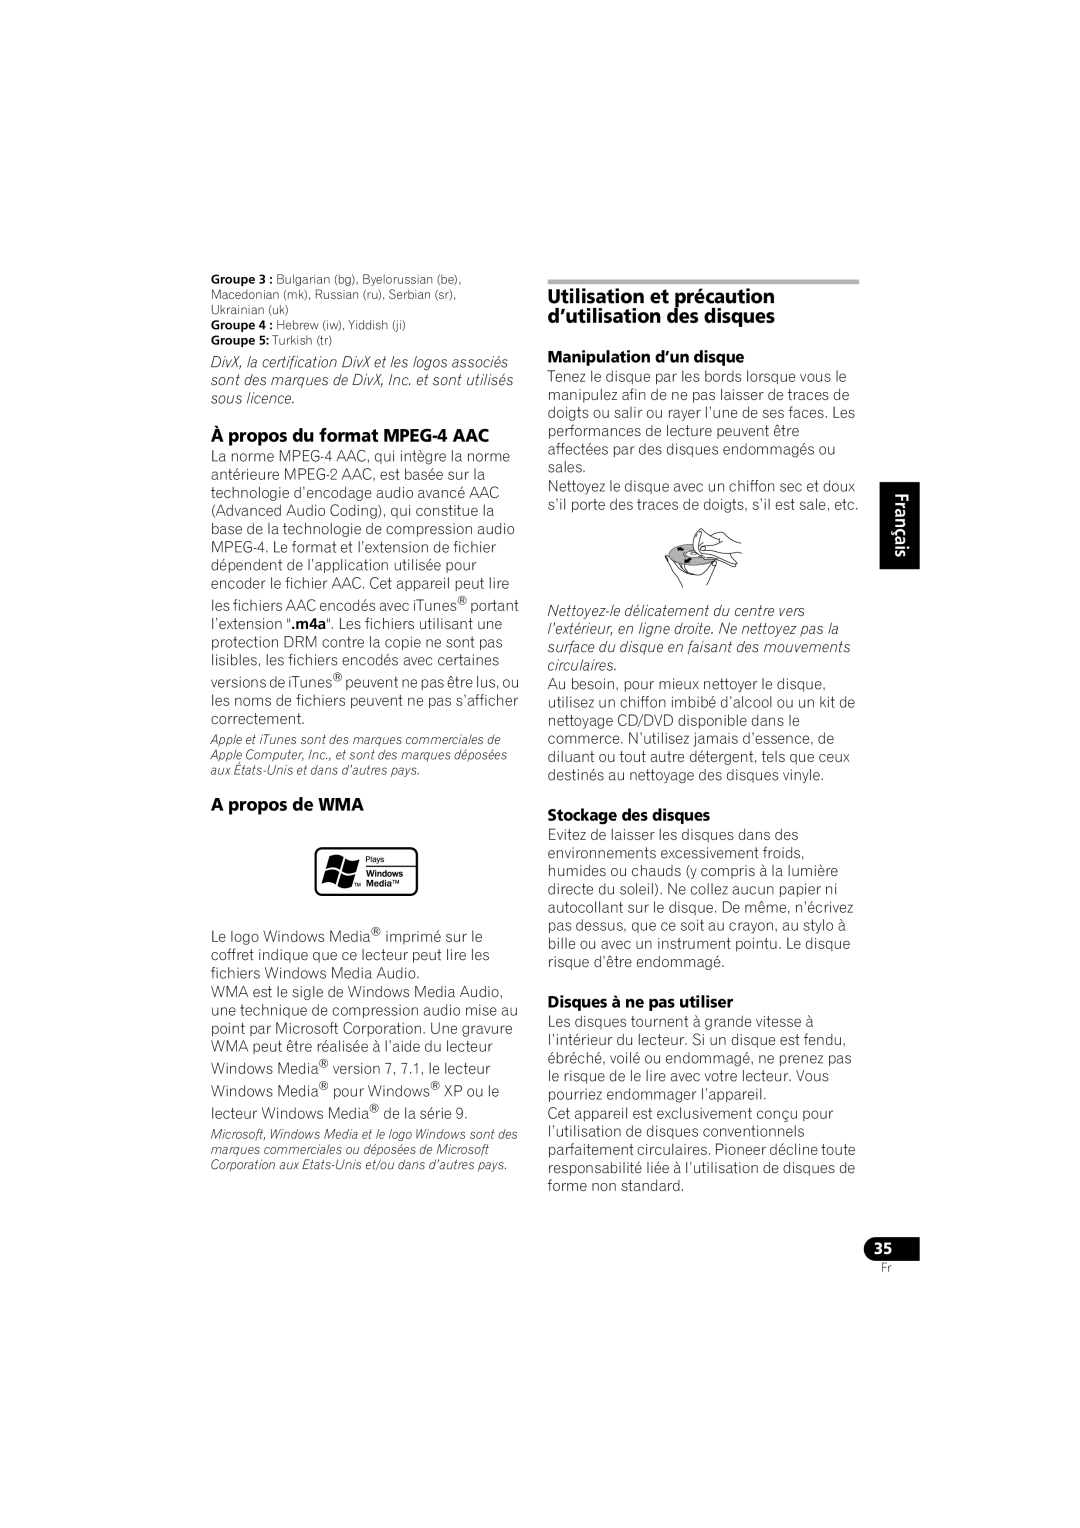 Pioneer HTZ-360DV manual À propos du format MPEG-4AAC, A propos de WMA, Manipulation d’un disque, Stockage des disques 